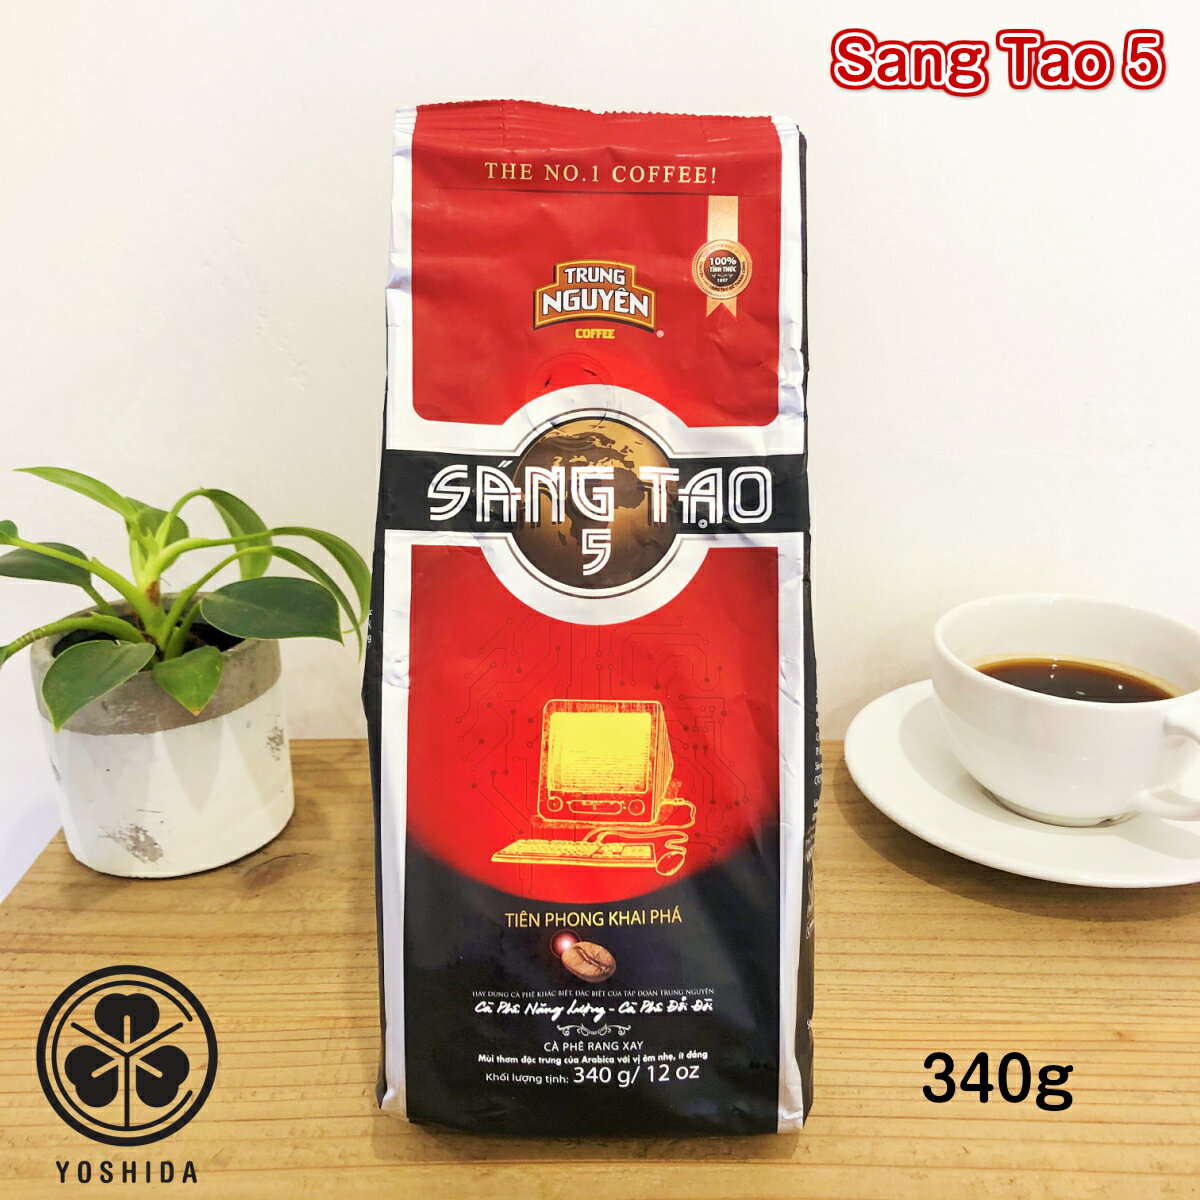 ベトナムコーヒー Trung Nguyen SangTao5 アラビカ 中挽き (340g) チュングエン Arabica レギュラーコーヒー ドリップ粉